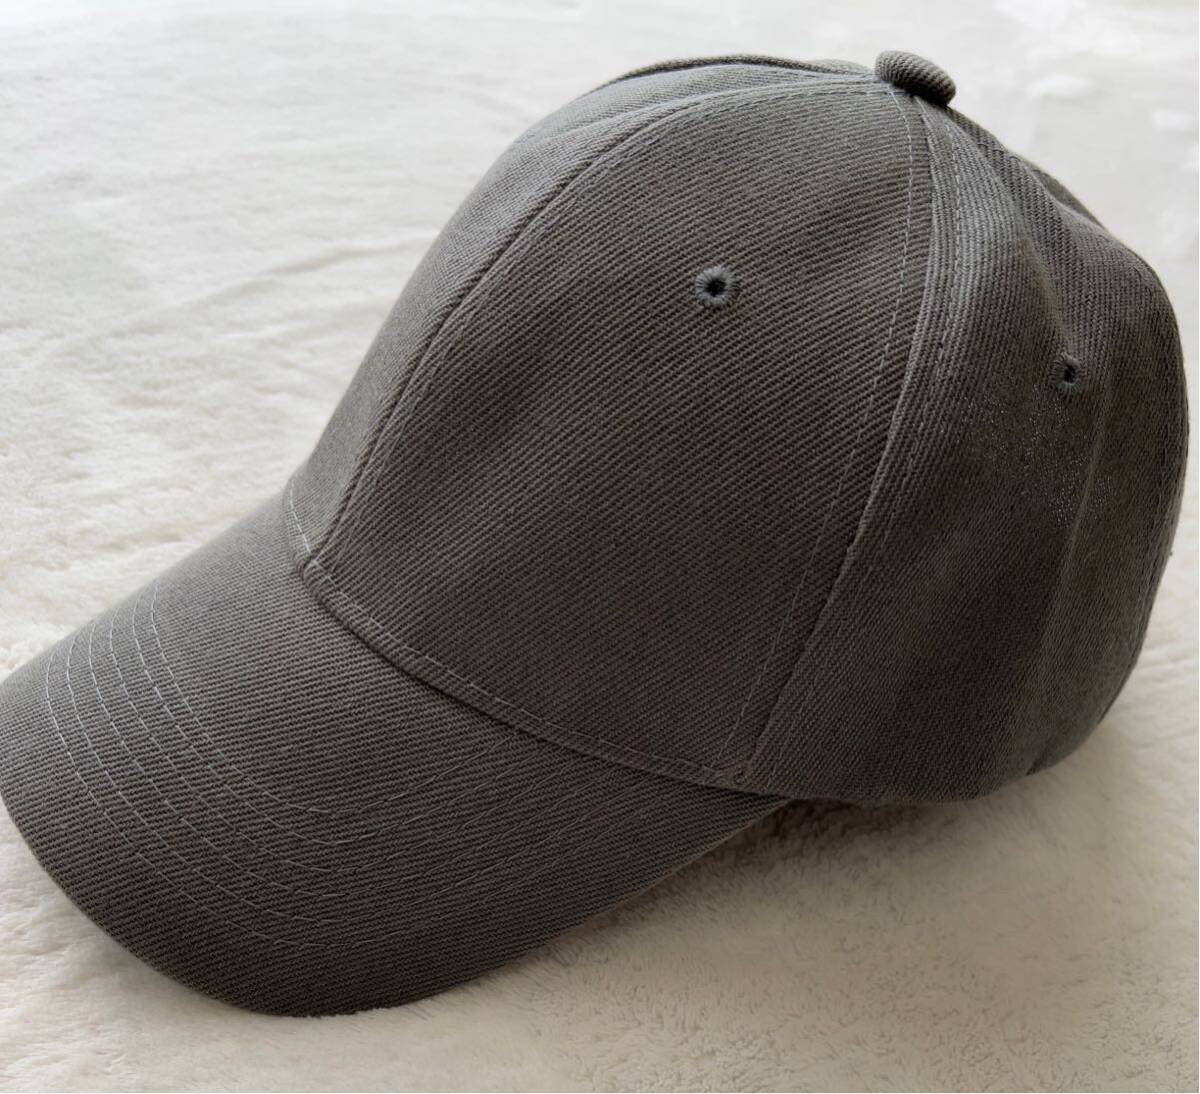 野球帽 シンプル帽子 グレー キャップ 日除け 暑さ対策 ファッションアイテム 男女兼用の画像1